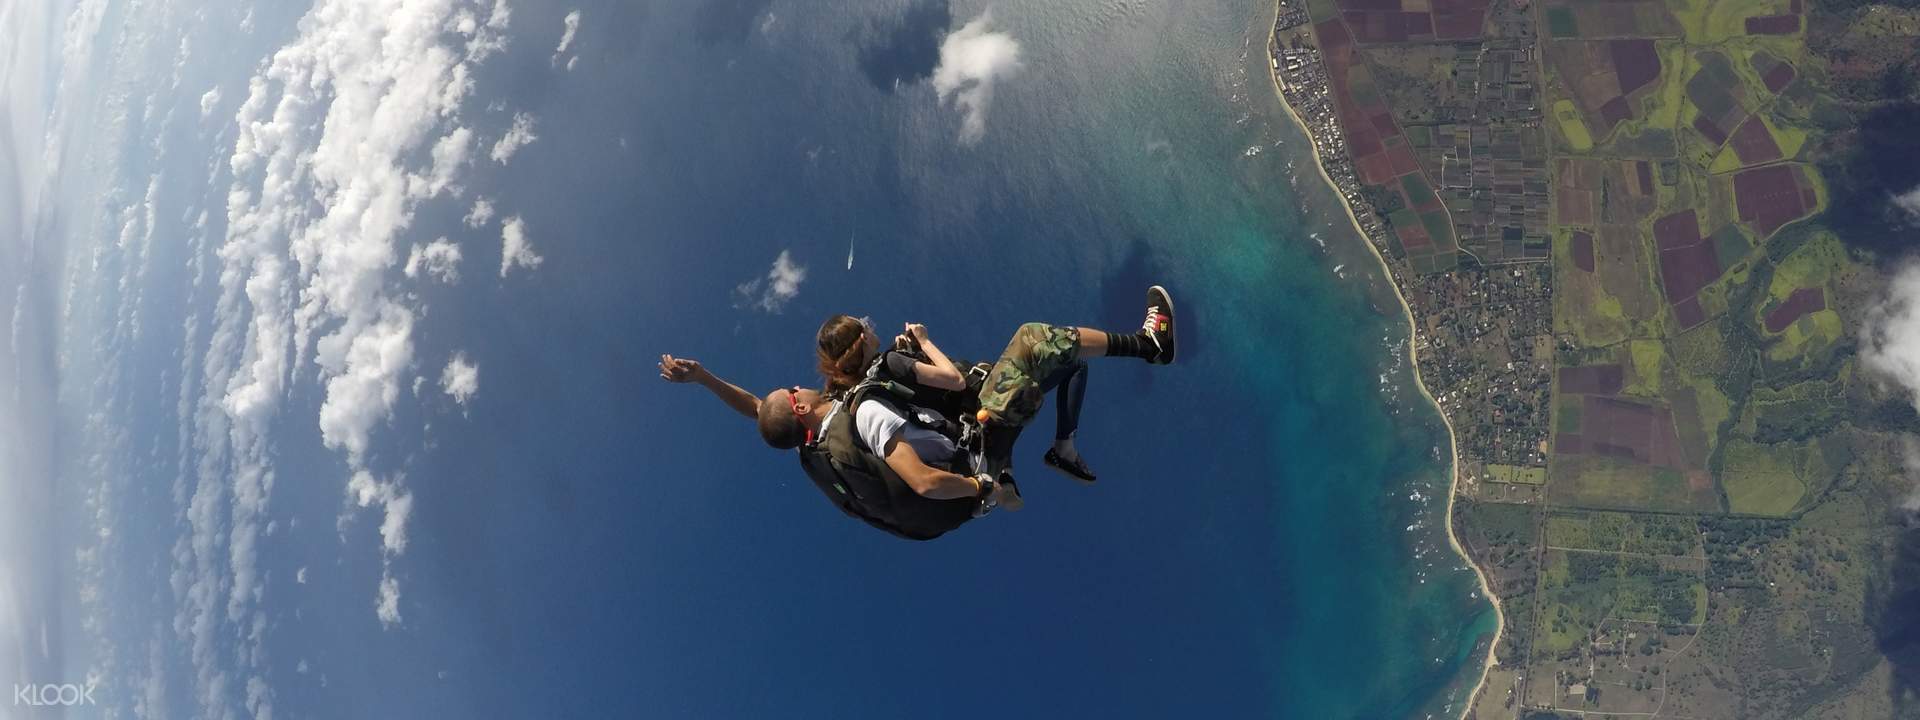 Oahu Skydiving, Hawaii Klook